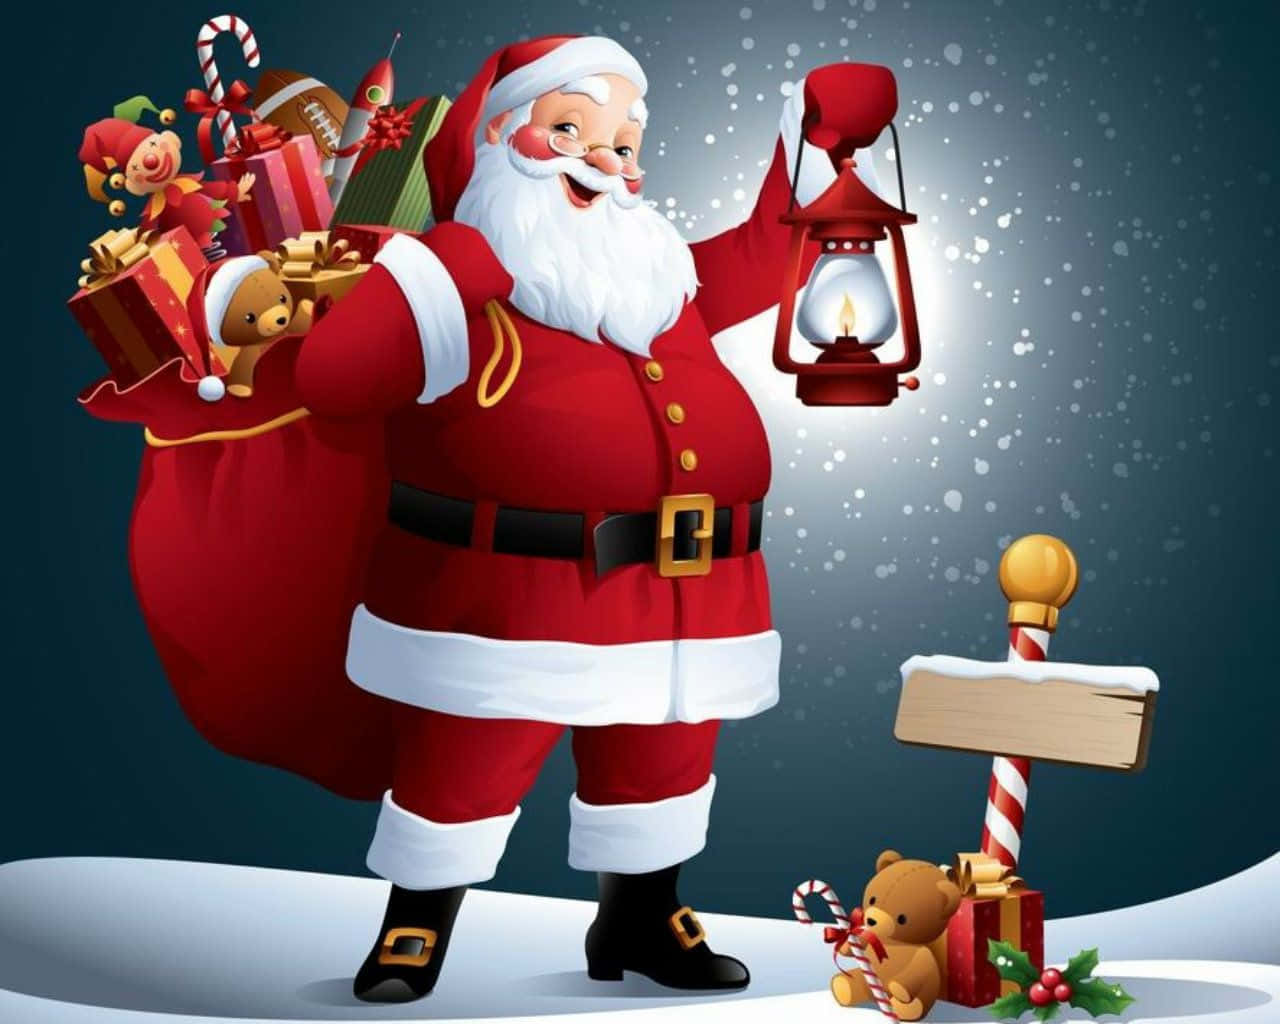 Santa Claus er her! Klar til at give jule gaver til alle gode børn. Wallpaper